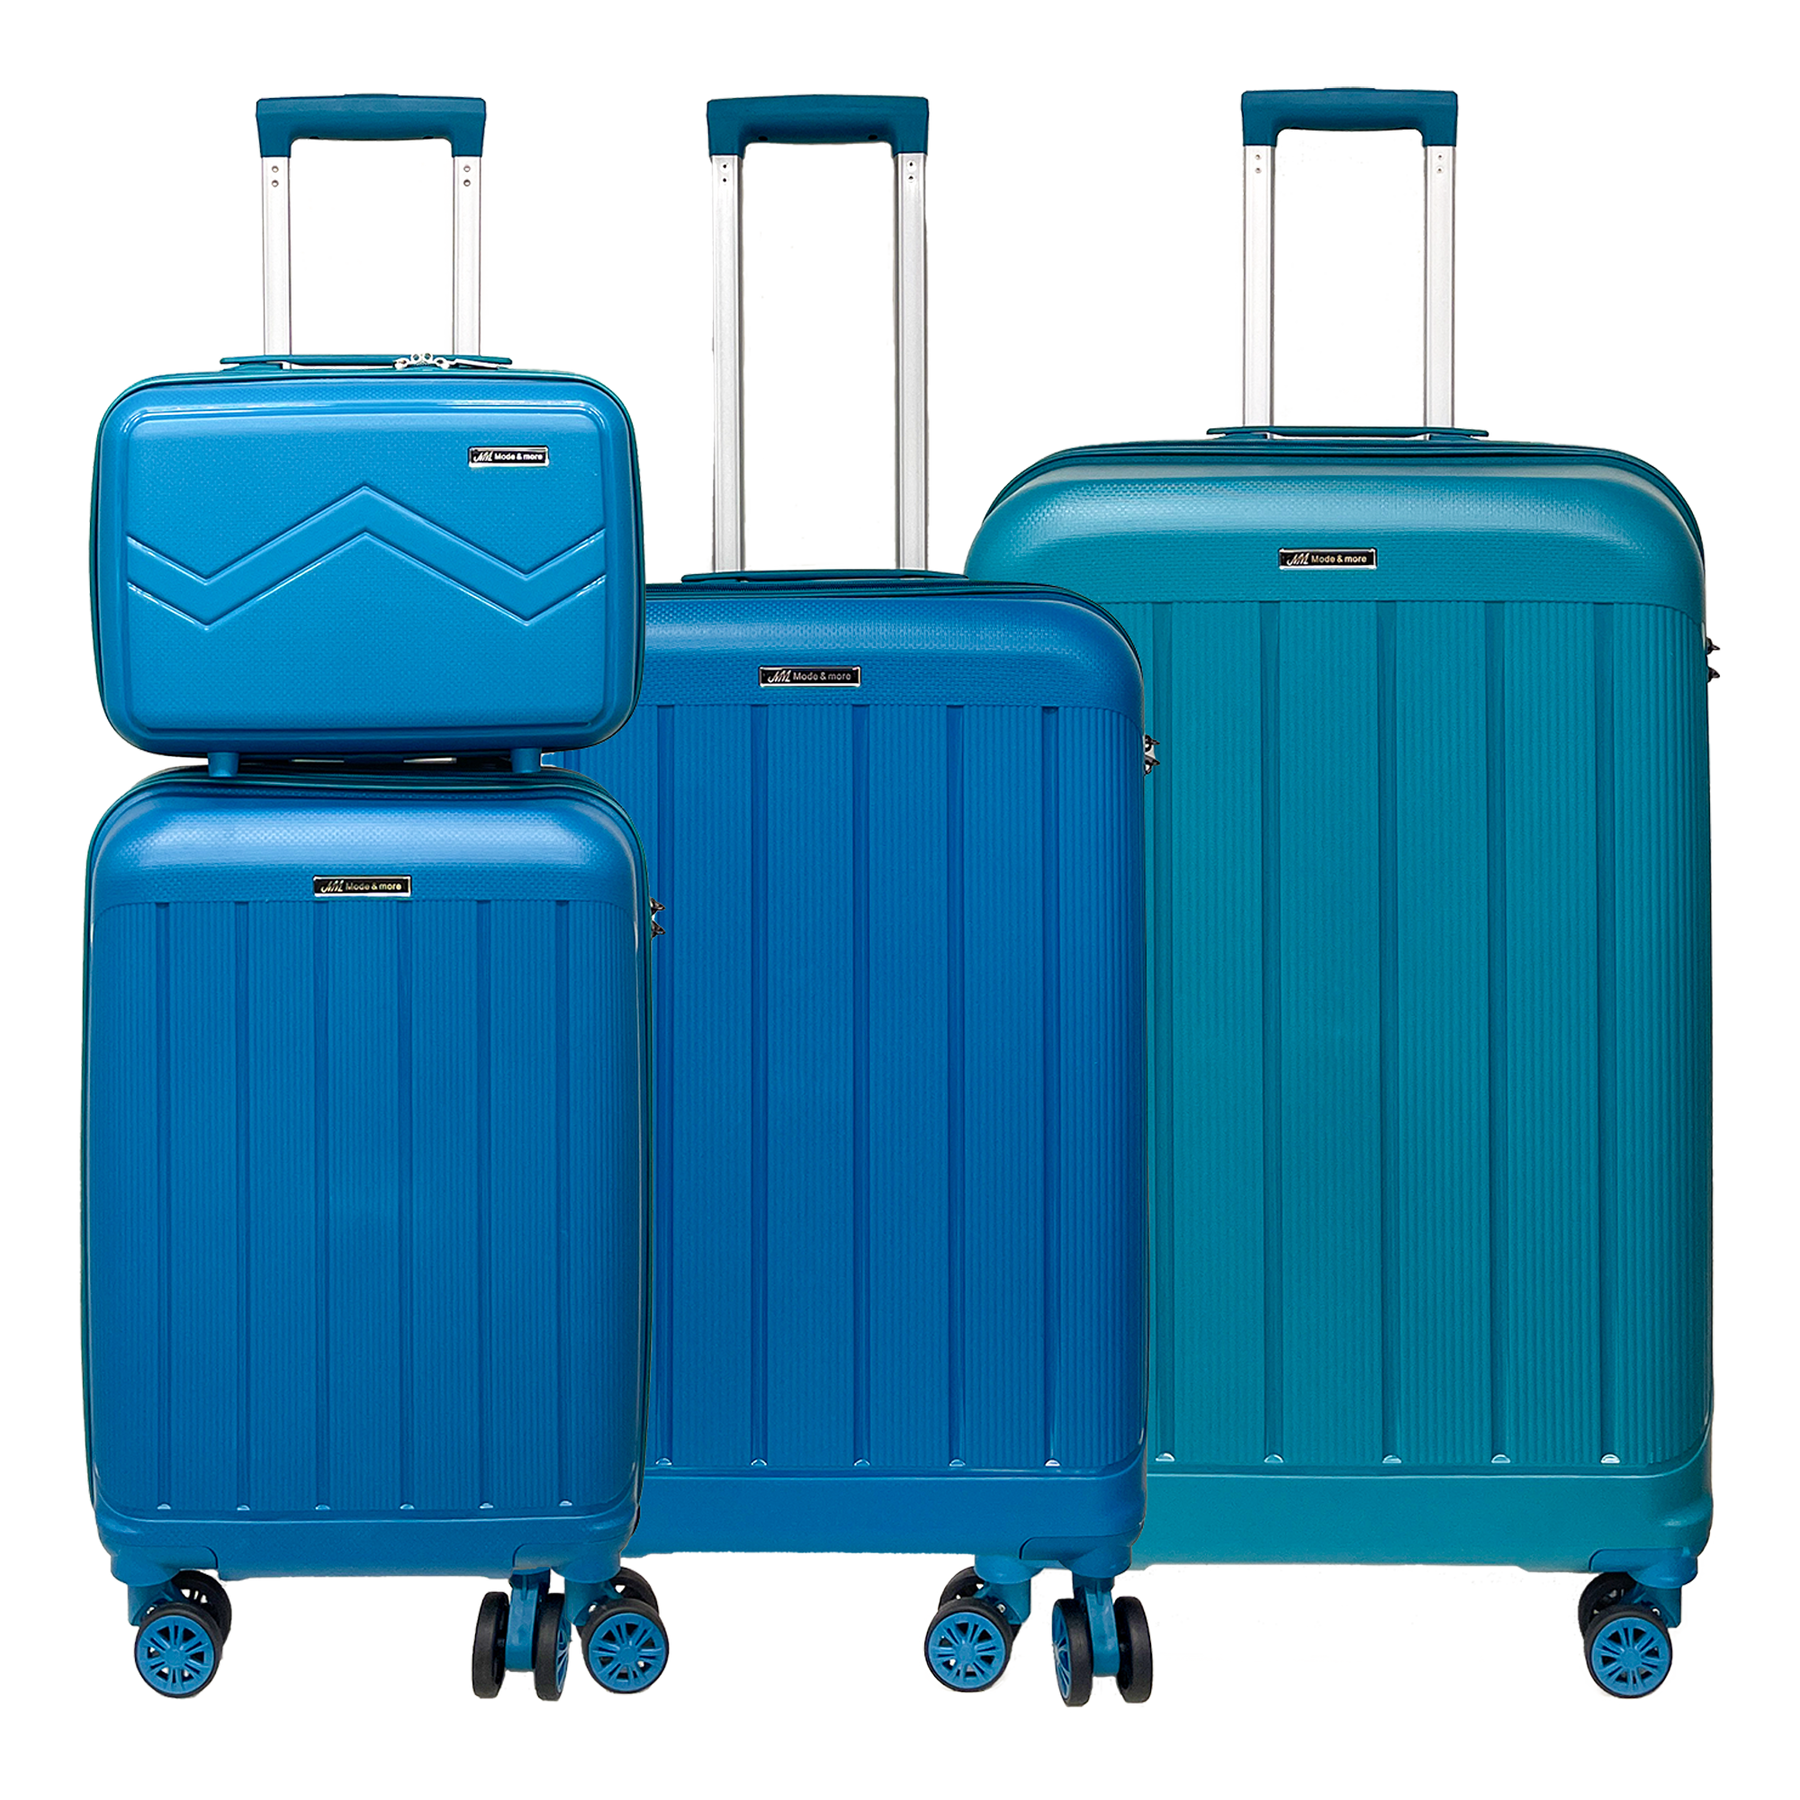 Σετ 4 βαλίτσες μαλακού πολυπροπυλενίου με TSA κλειδαριά και τρόλεϊ ομορφιάς